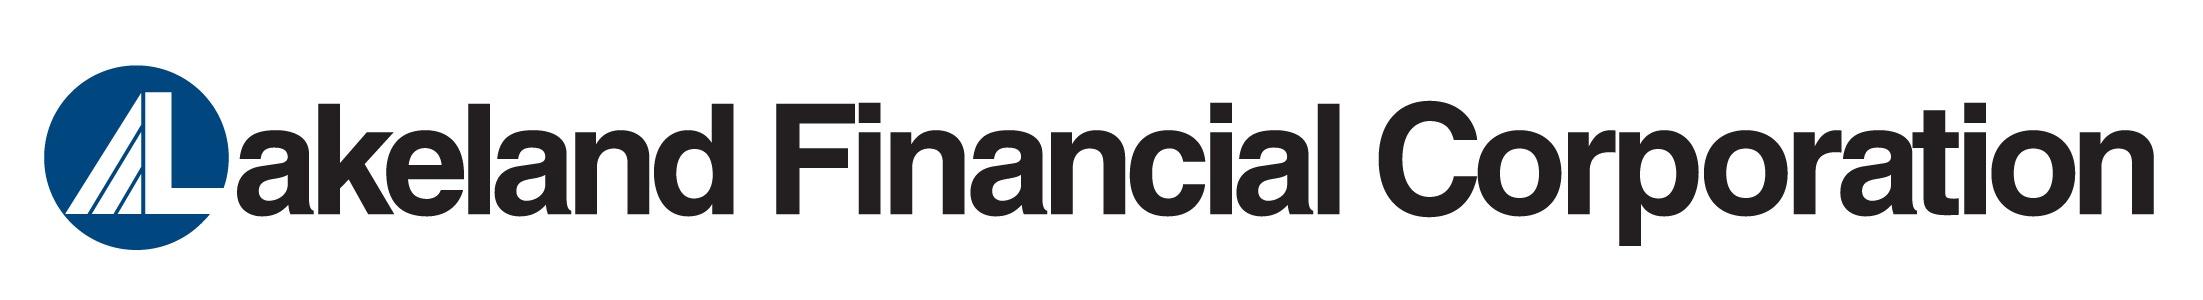 Lakeland Financial logo.png